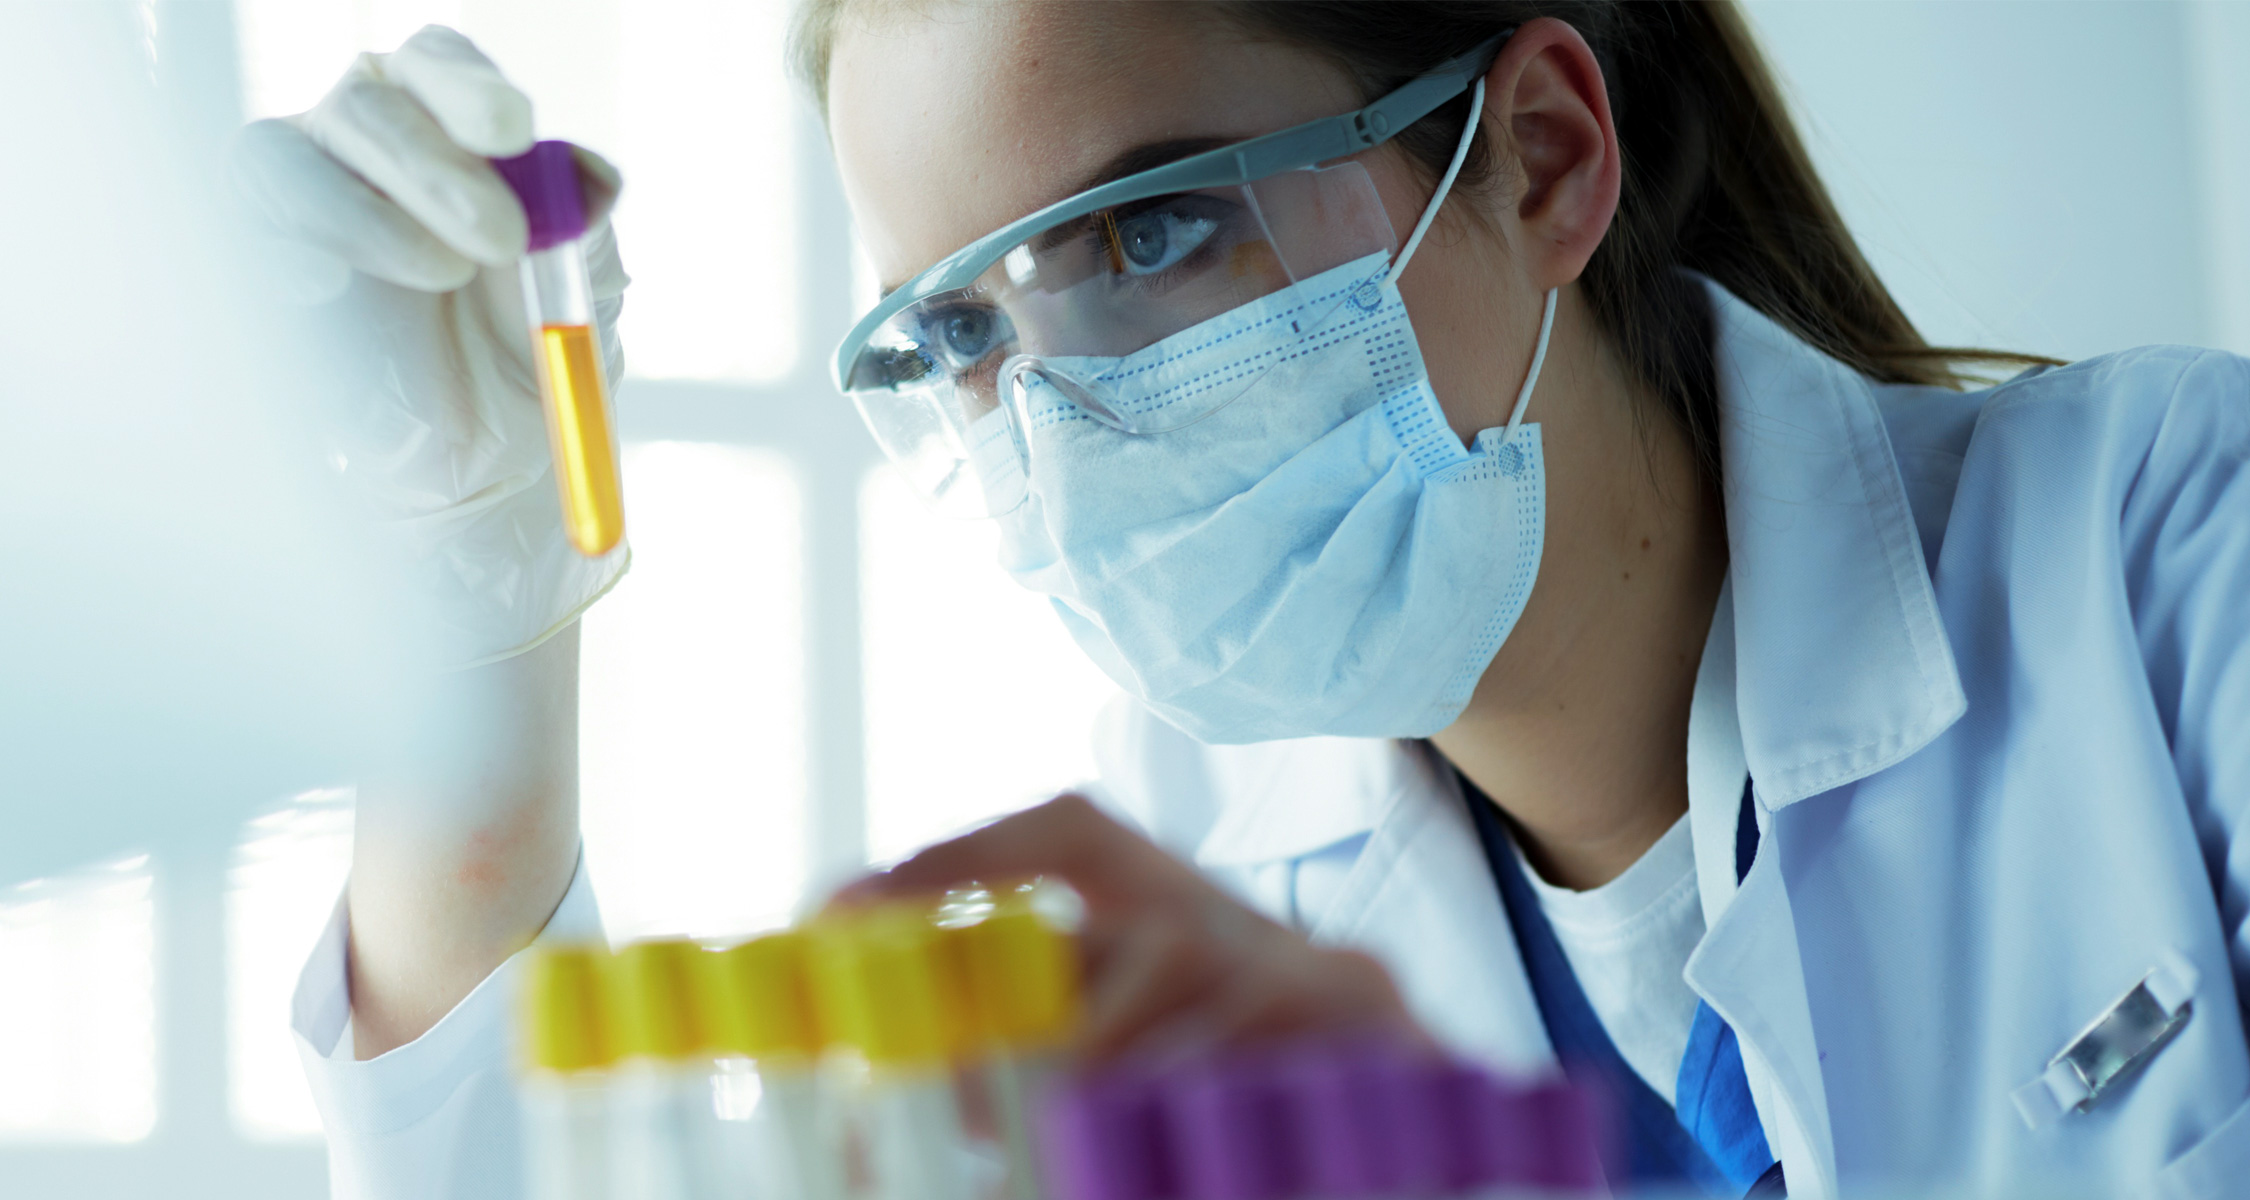 Laborantin mit Mundschutz, Schutzbrille und Kittel schaut in Reagenzglas mit gelber Flüssigkeit.